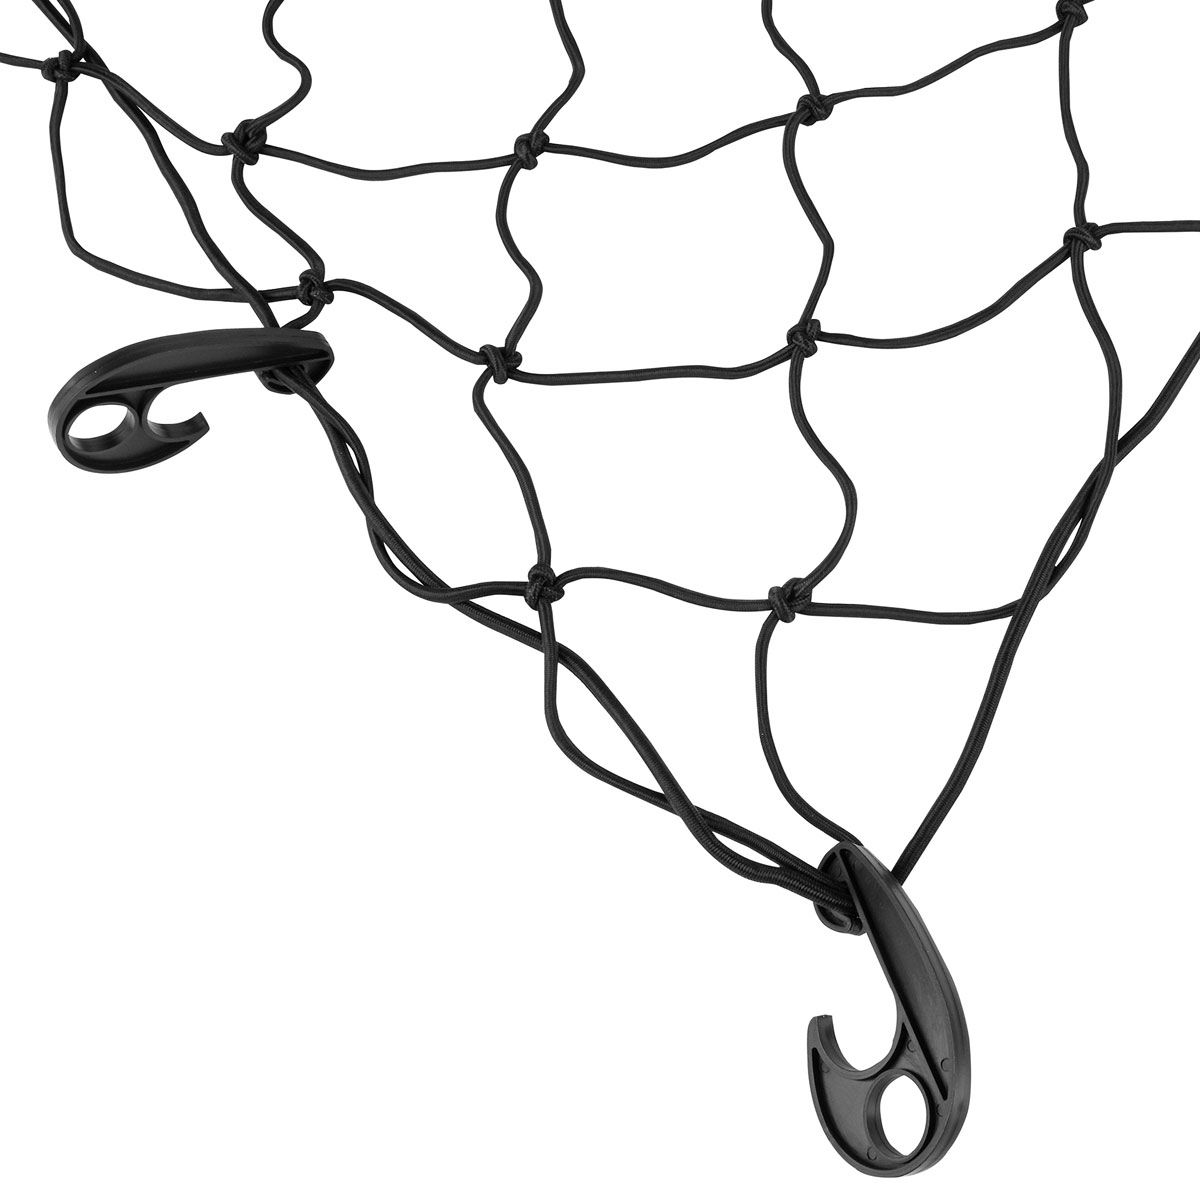 Loisiro - Filet élastique avec crochets pour remorque 150 x 220 cm - LAS